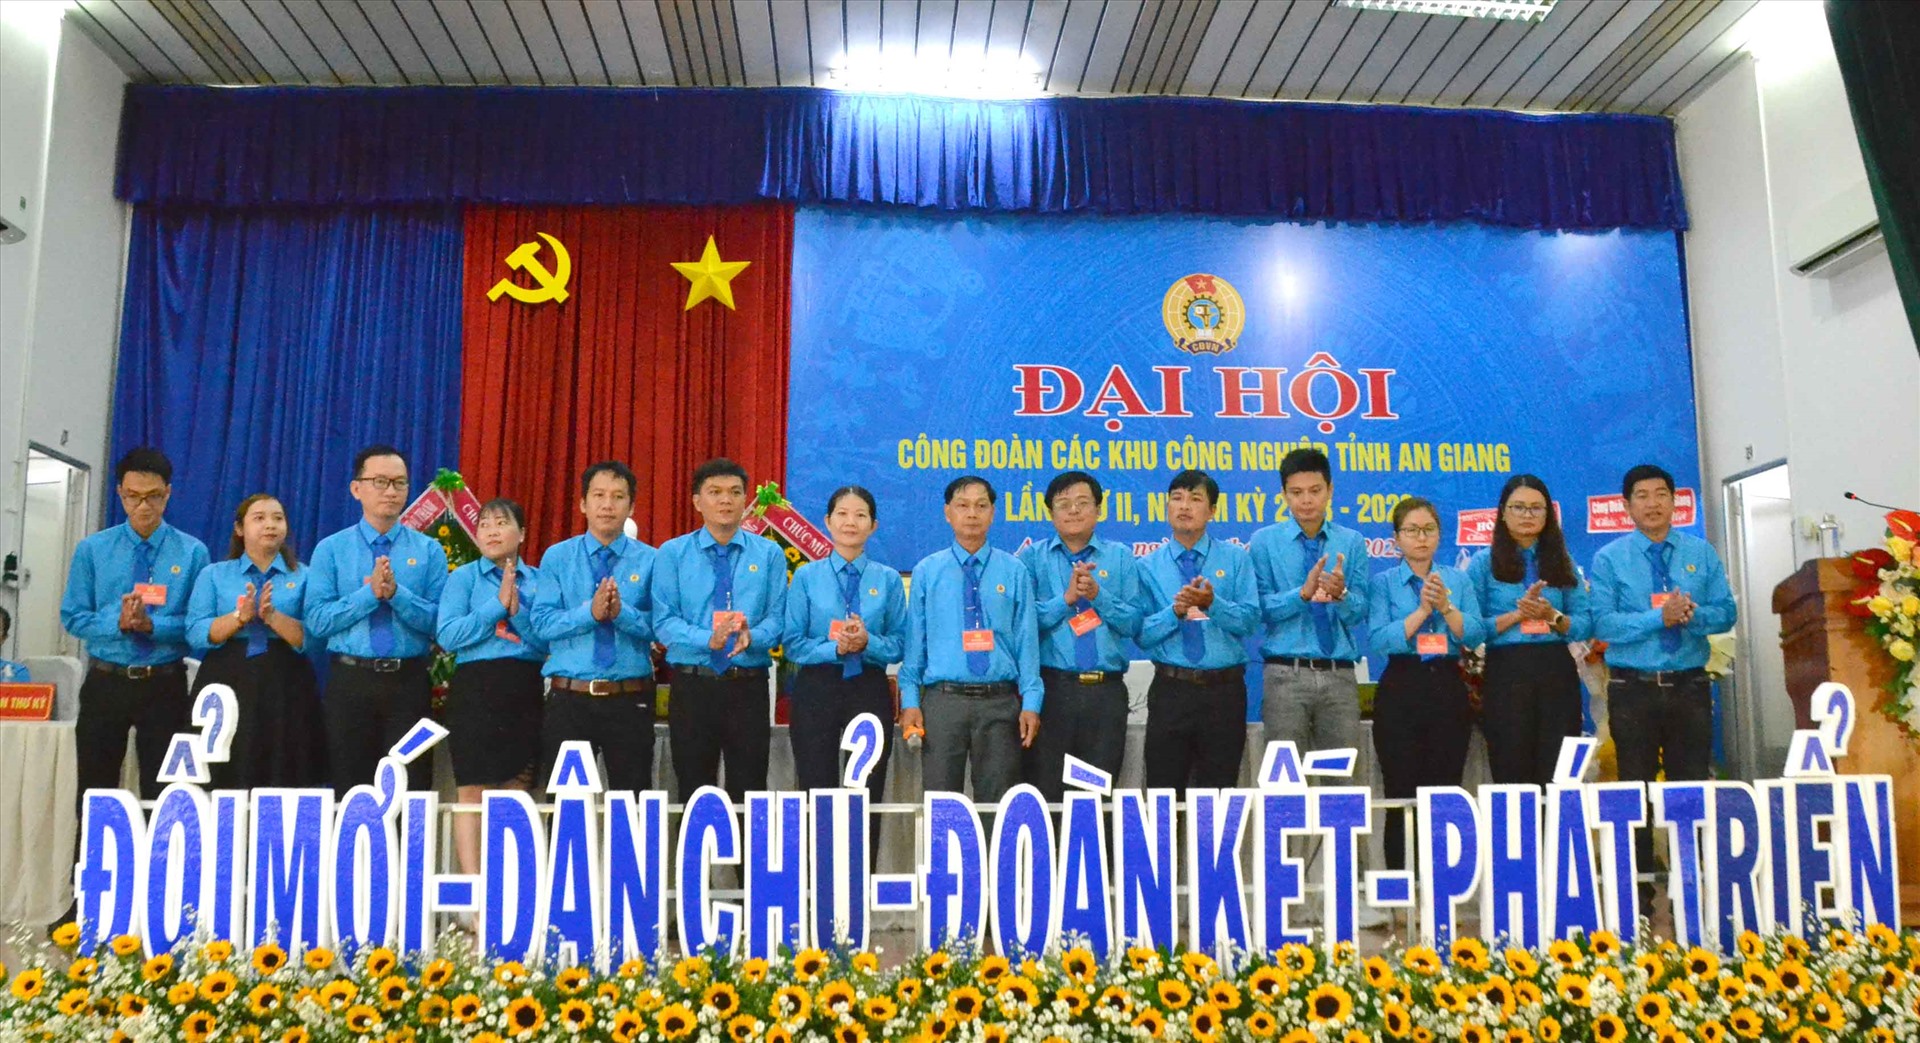 Ban chấp hành khóa 2 Công đoàn các khu công nghiệp tỉnh An Giang ra mắt Đại hội. Ảnh: Lâm Điền